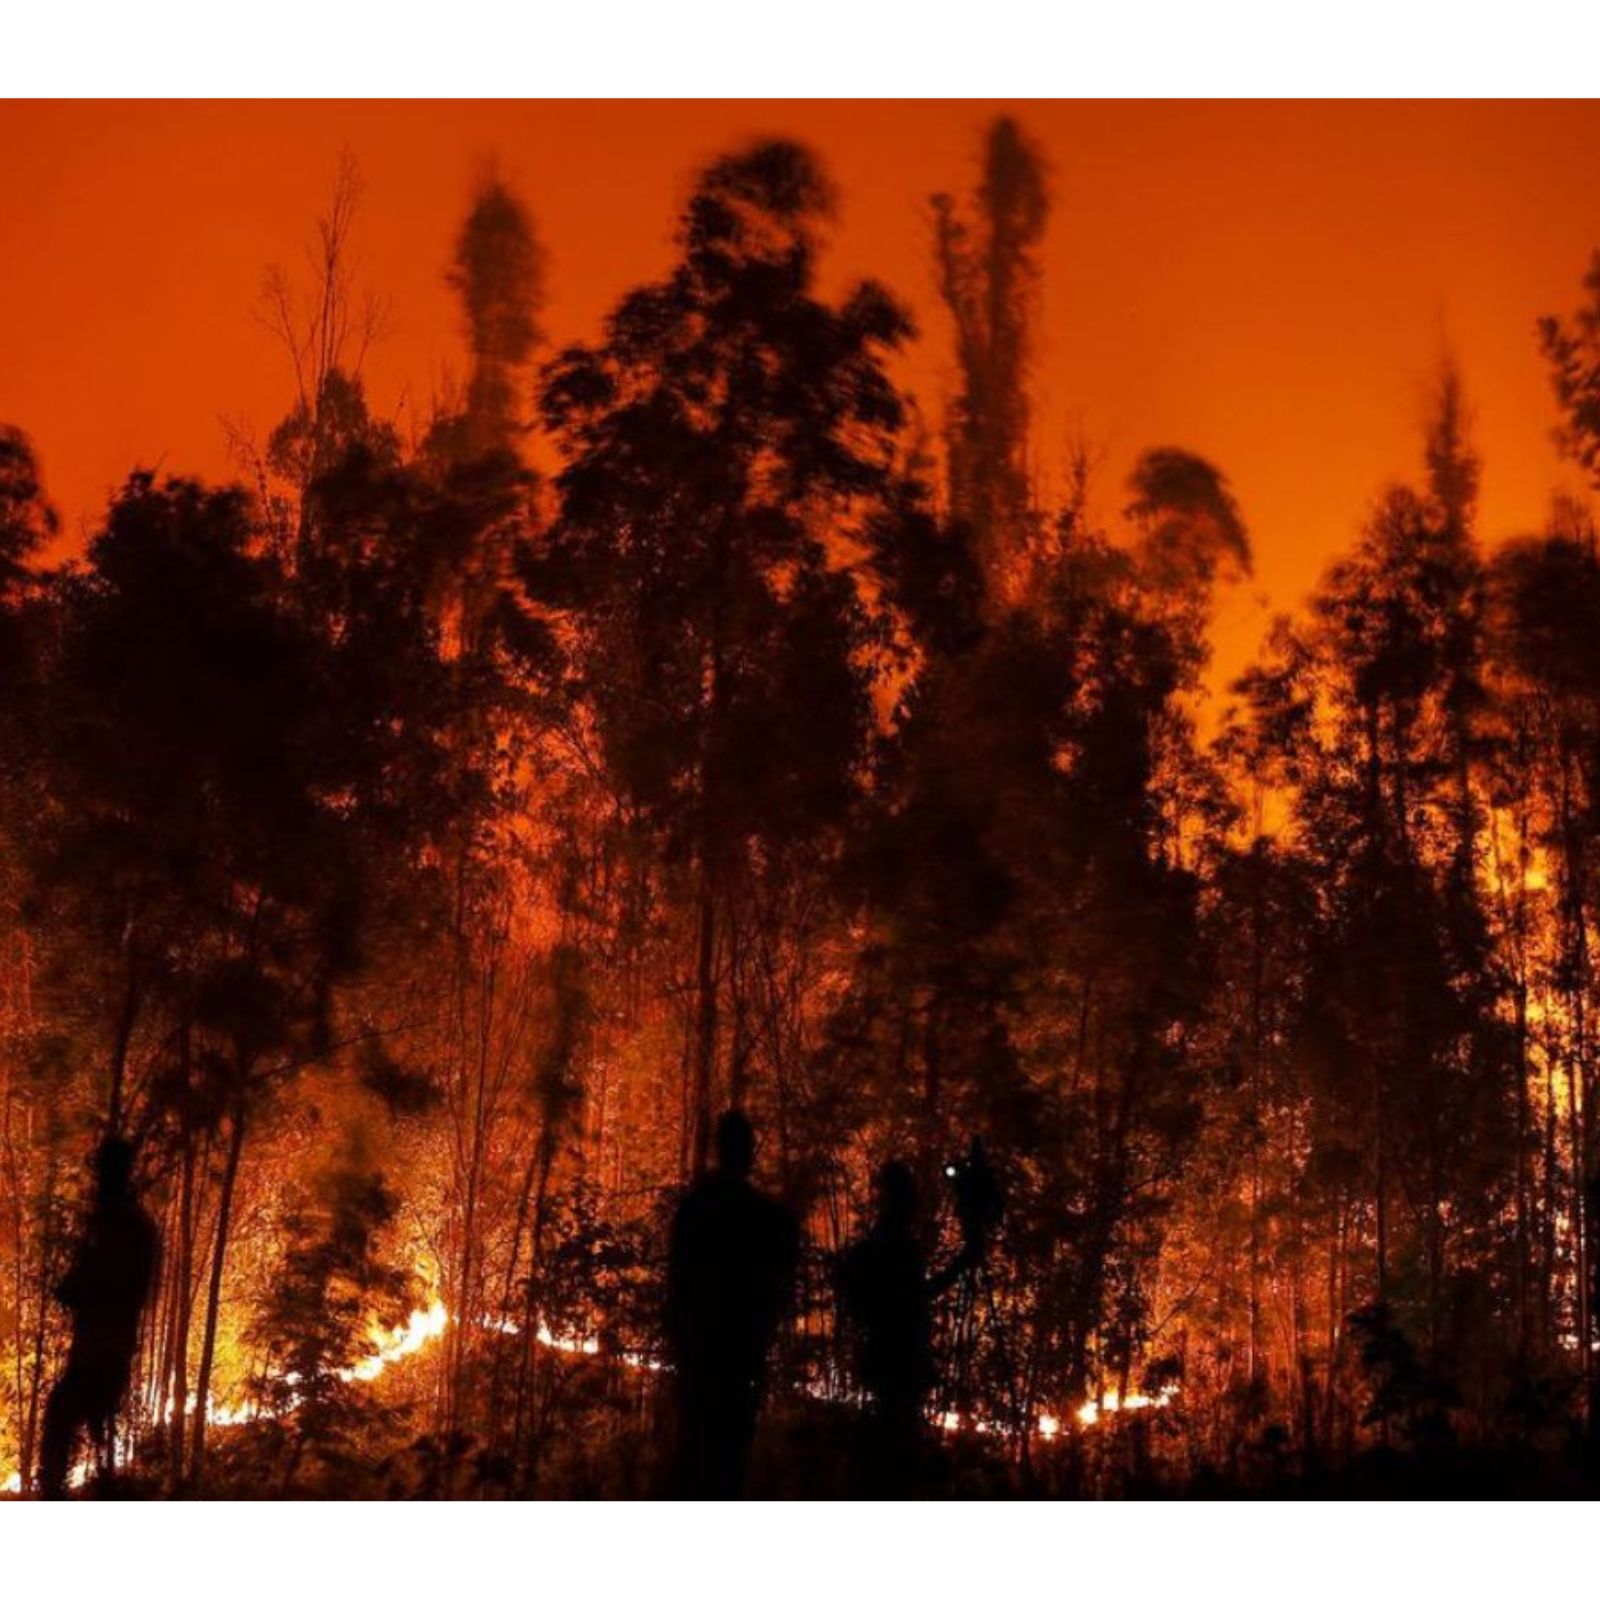  આ ભીષણ આગના કારણે 14 હજાર હેકટર જંગલ બળીને ખાક થયું છે. આ વિનાશકારી આગના કારણે ચિલીમાં તબાહી મચાવી દીધી છે. આગના આ ઘટનાના કારણે કેટલાય મકાનો બળી ગયા છે.